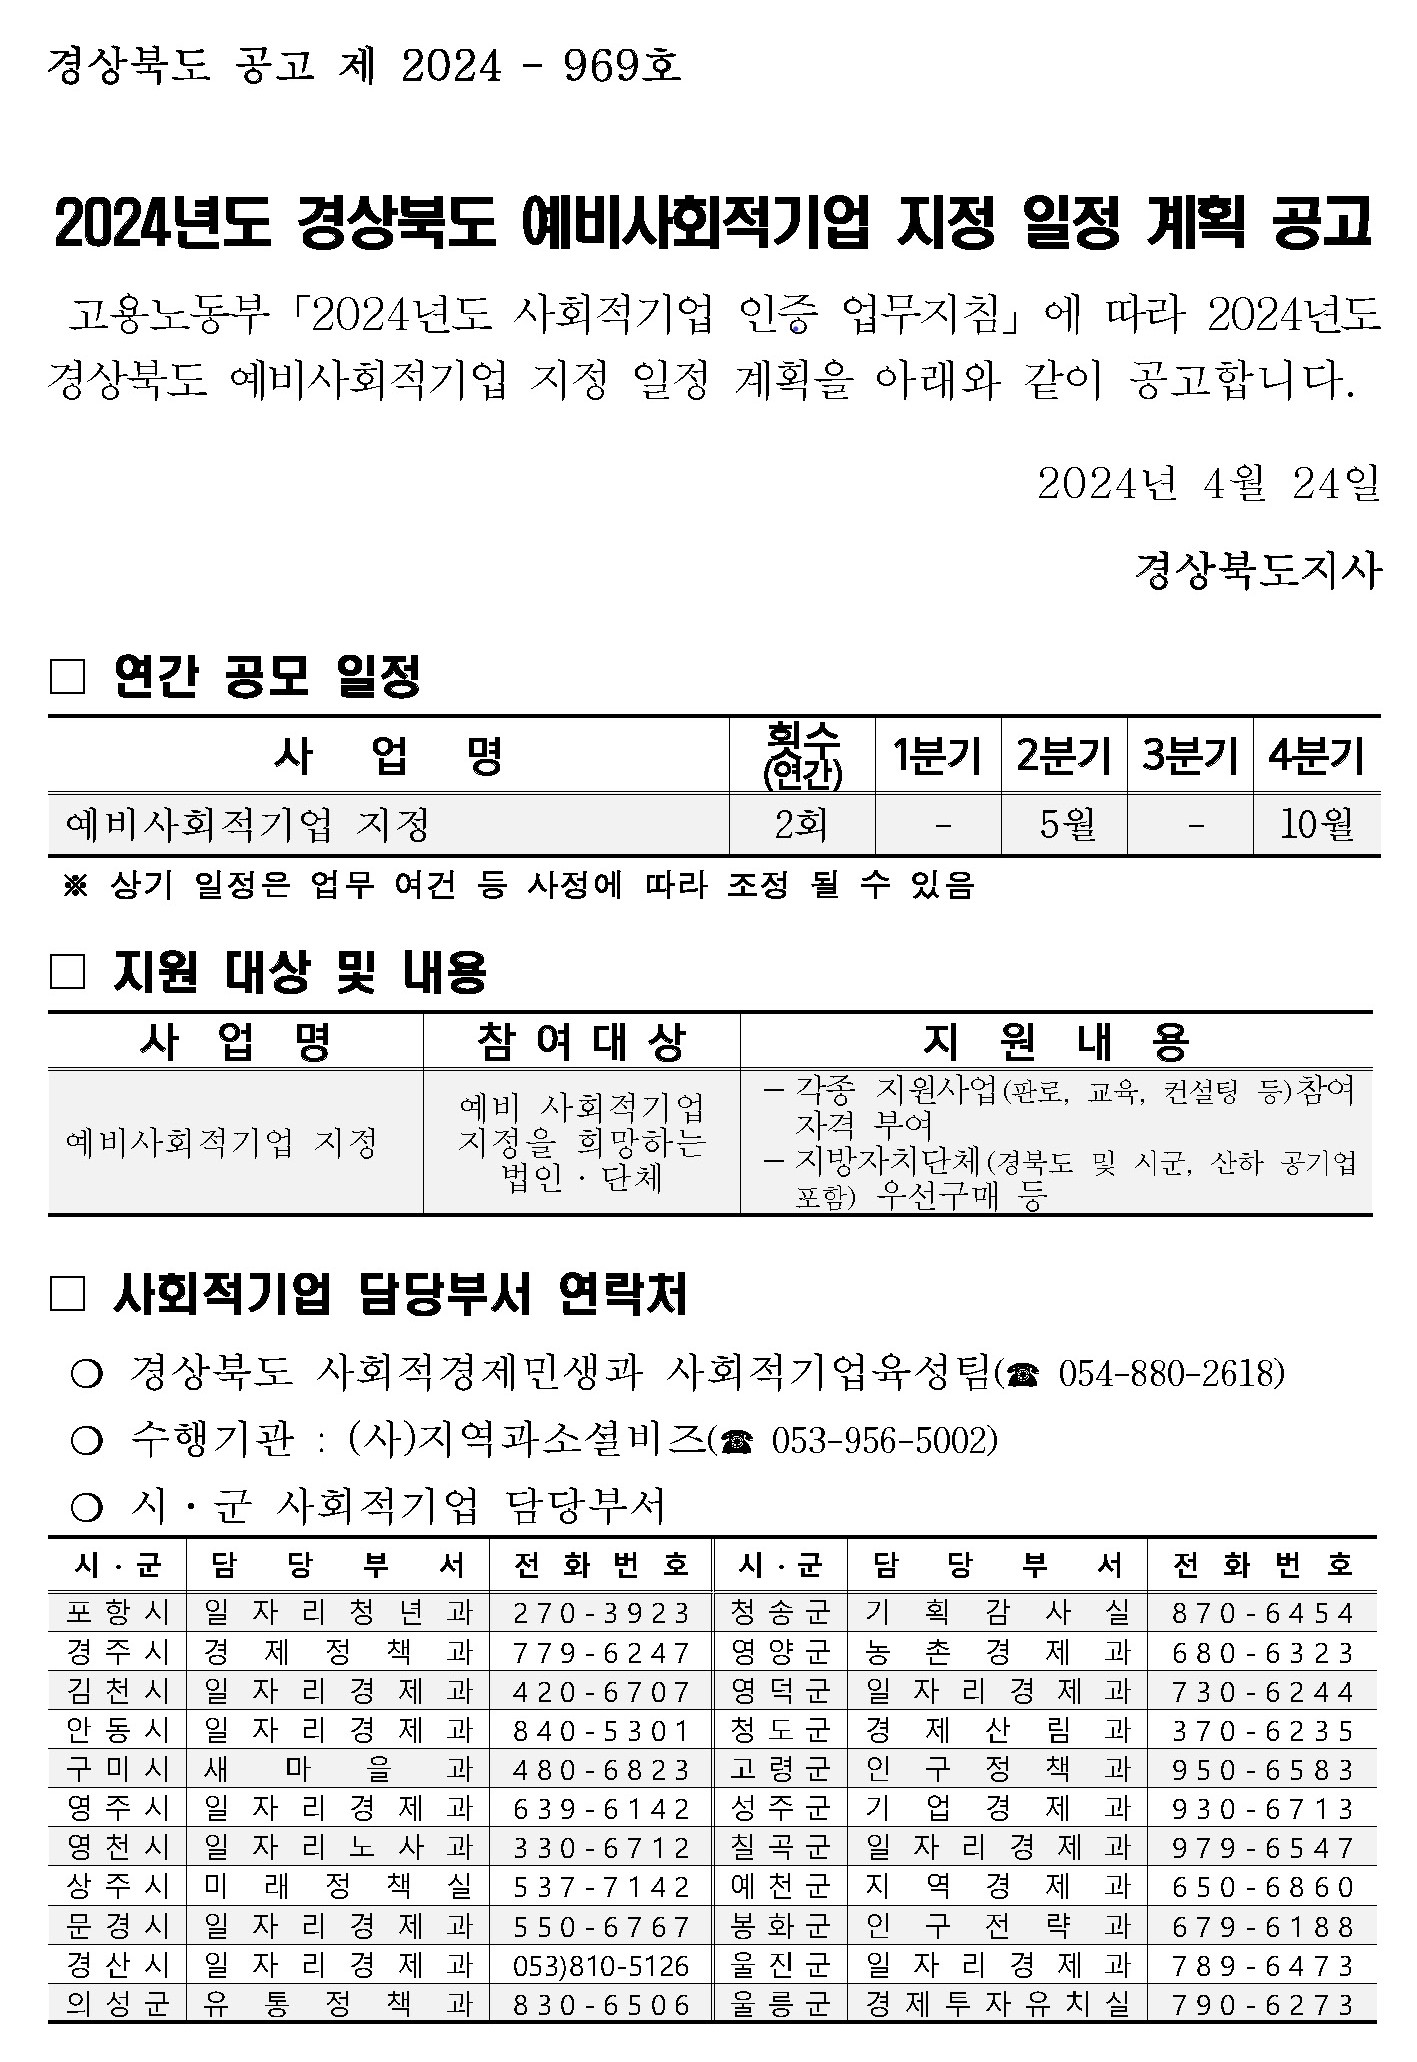 2024년도 경북 예비사회적기업 지정 일정 계획 공고(5월 예정)